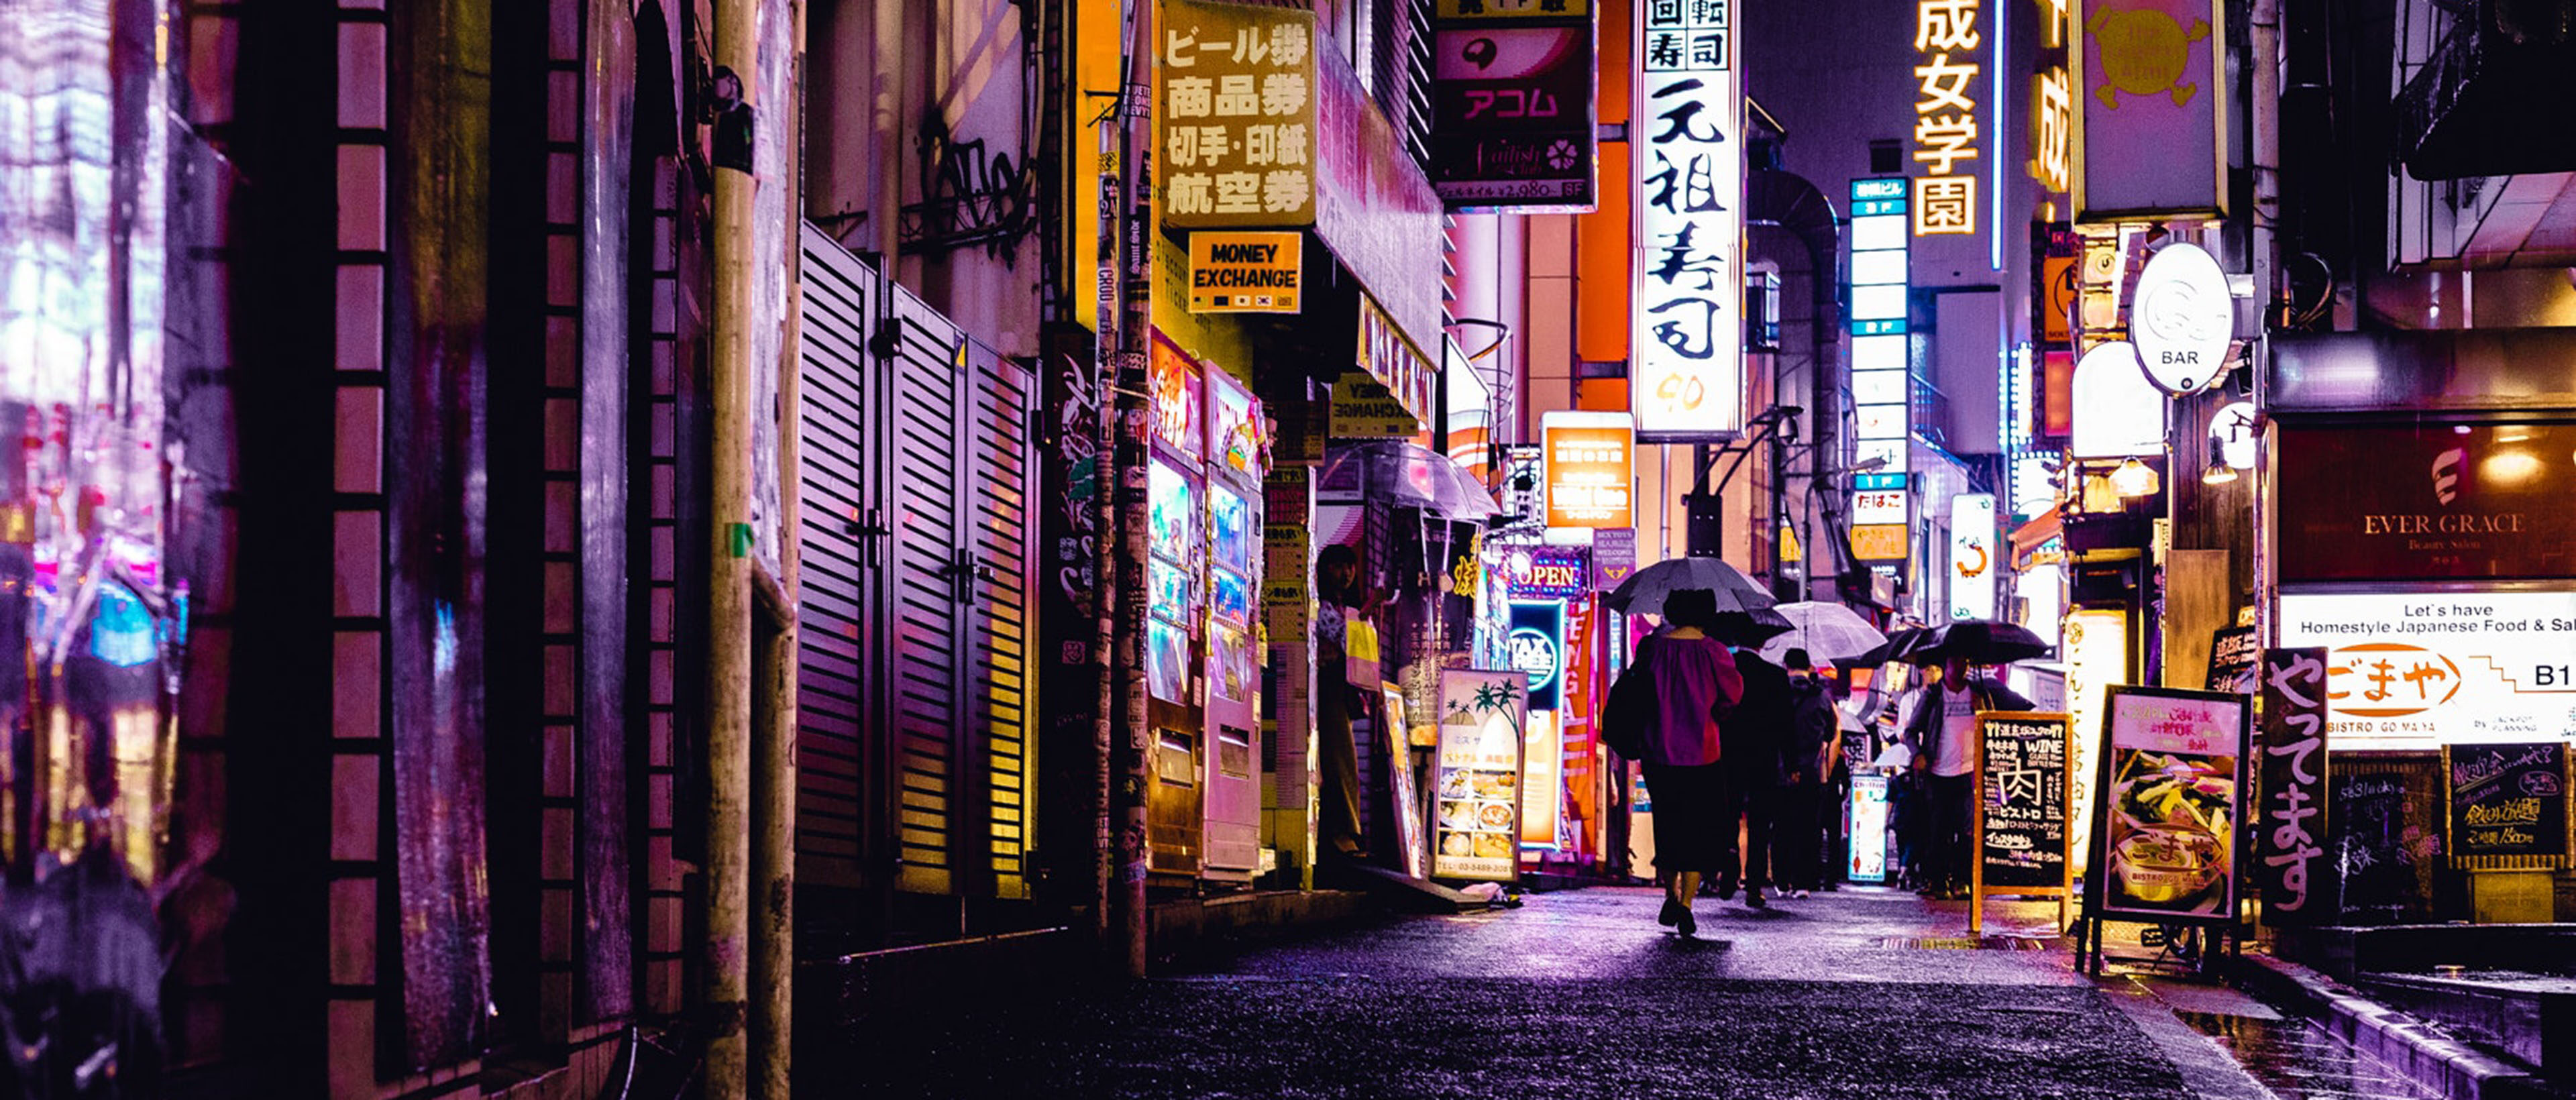 Preview Image: 7 schnelle Tipps für Streetfotos bei Nacht